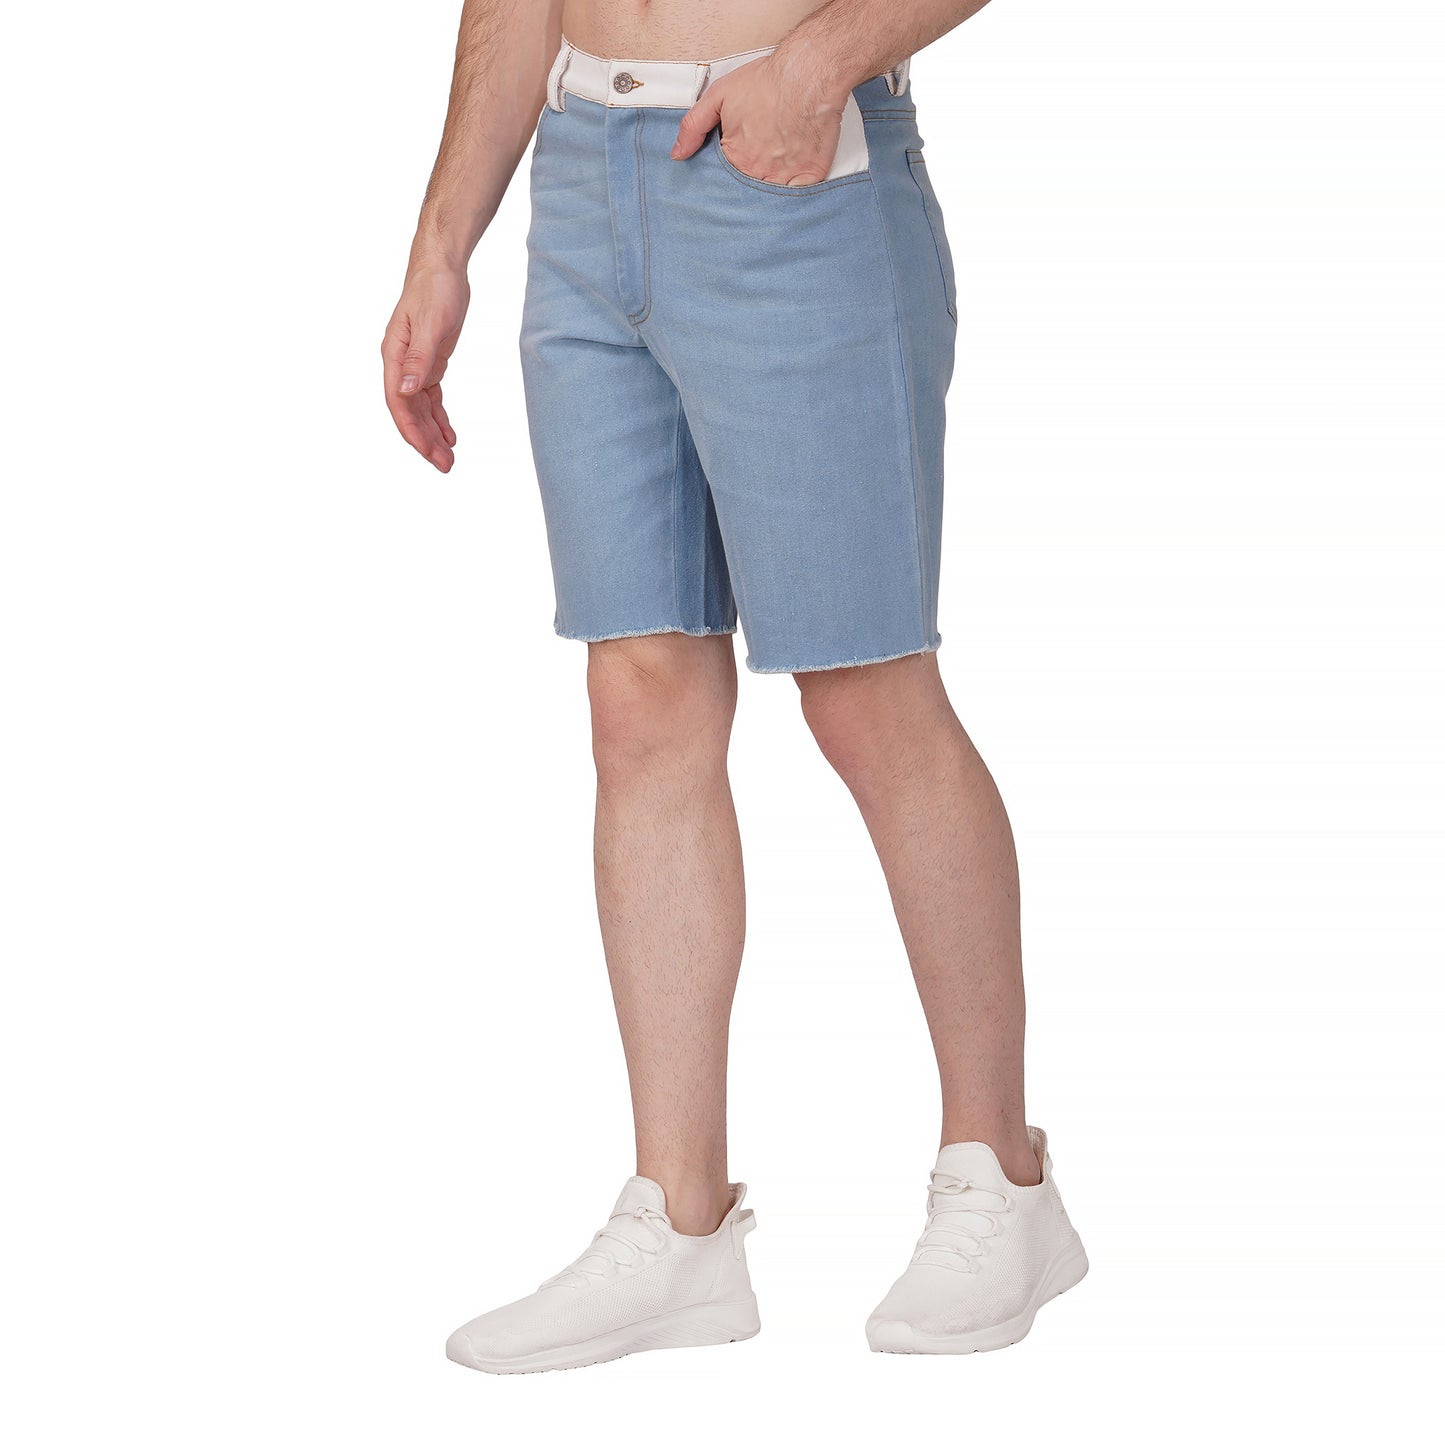 SLAY. Men's Enzyme Washed Denim Shorts with White Waist Border